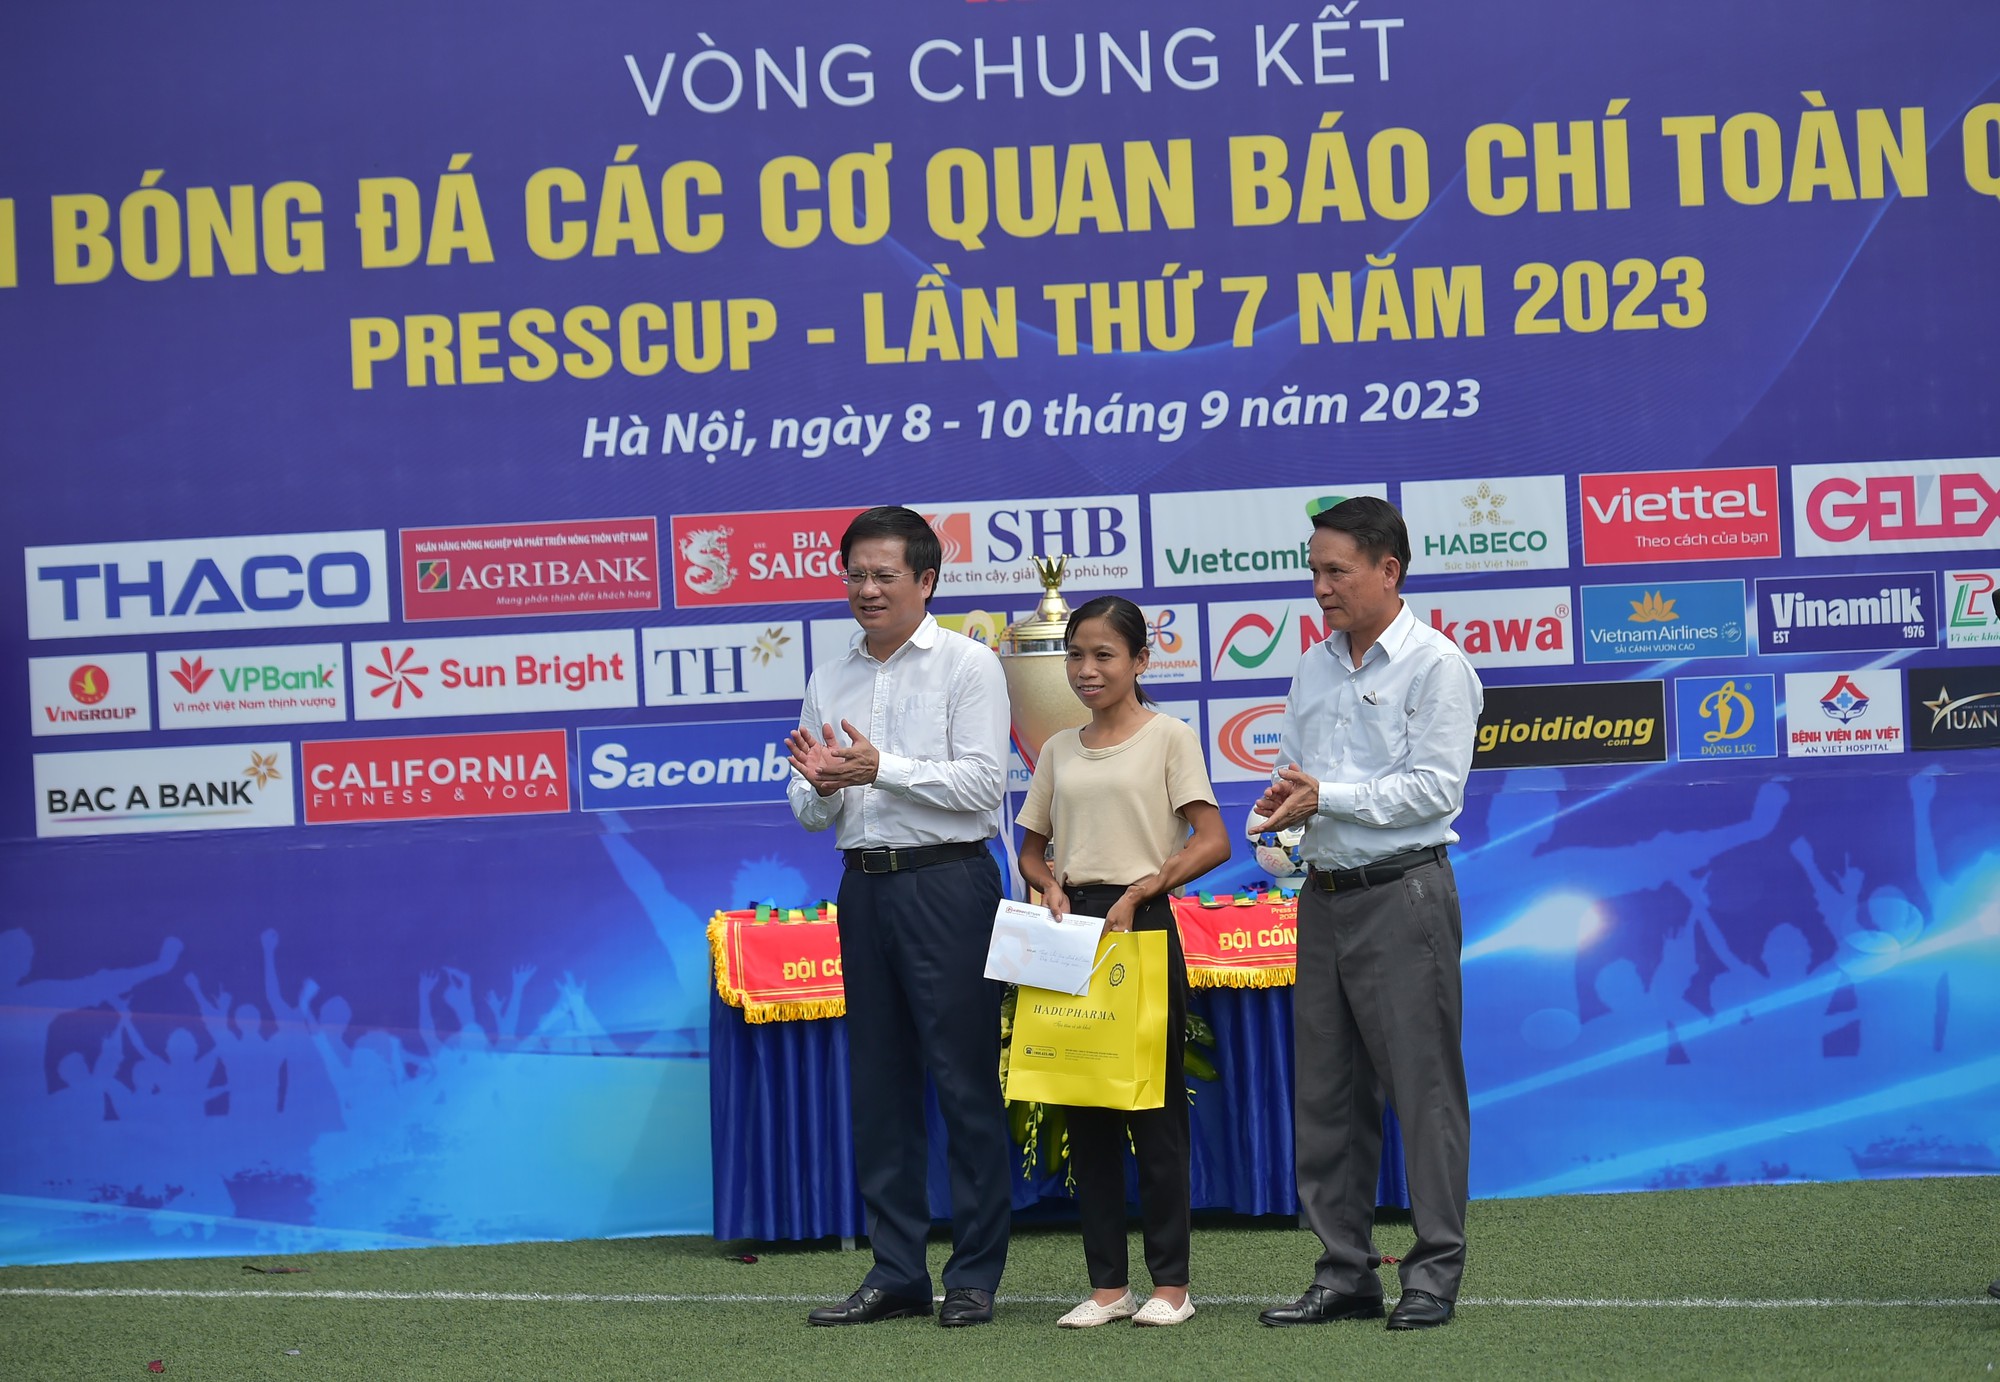 Khai mạc Vòng chung kết Press Cup 2023 - Ảnh 6.